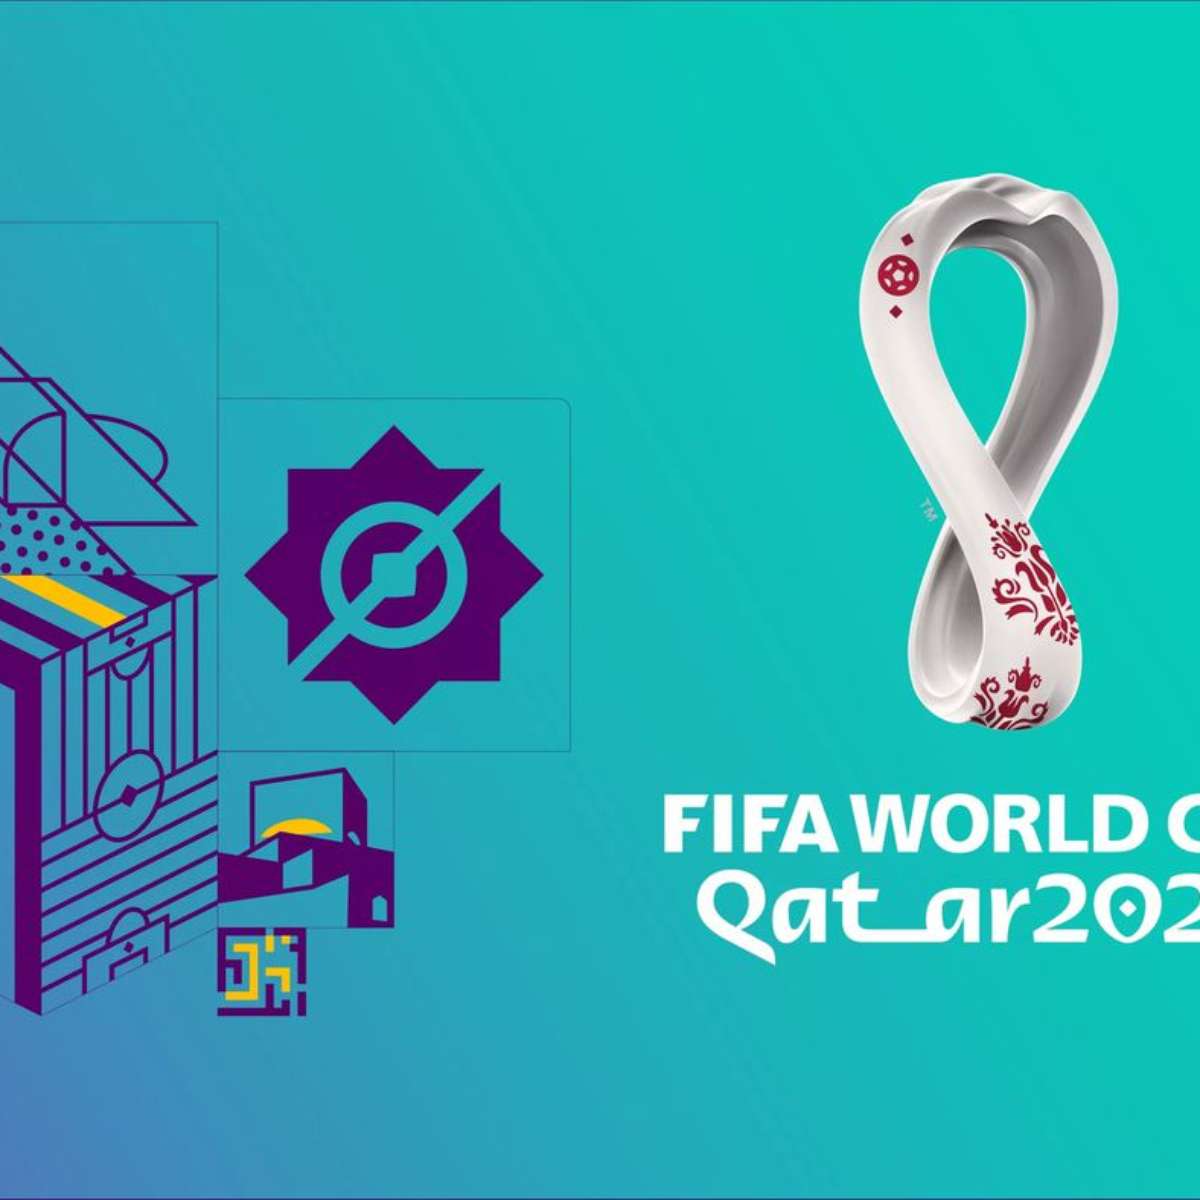 Bolão da Copa 2022: conheça 4 apps gratuitos para fazer suas apostas, Tecnologia